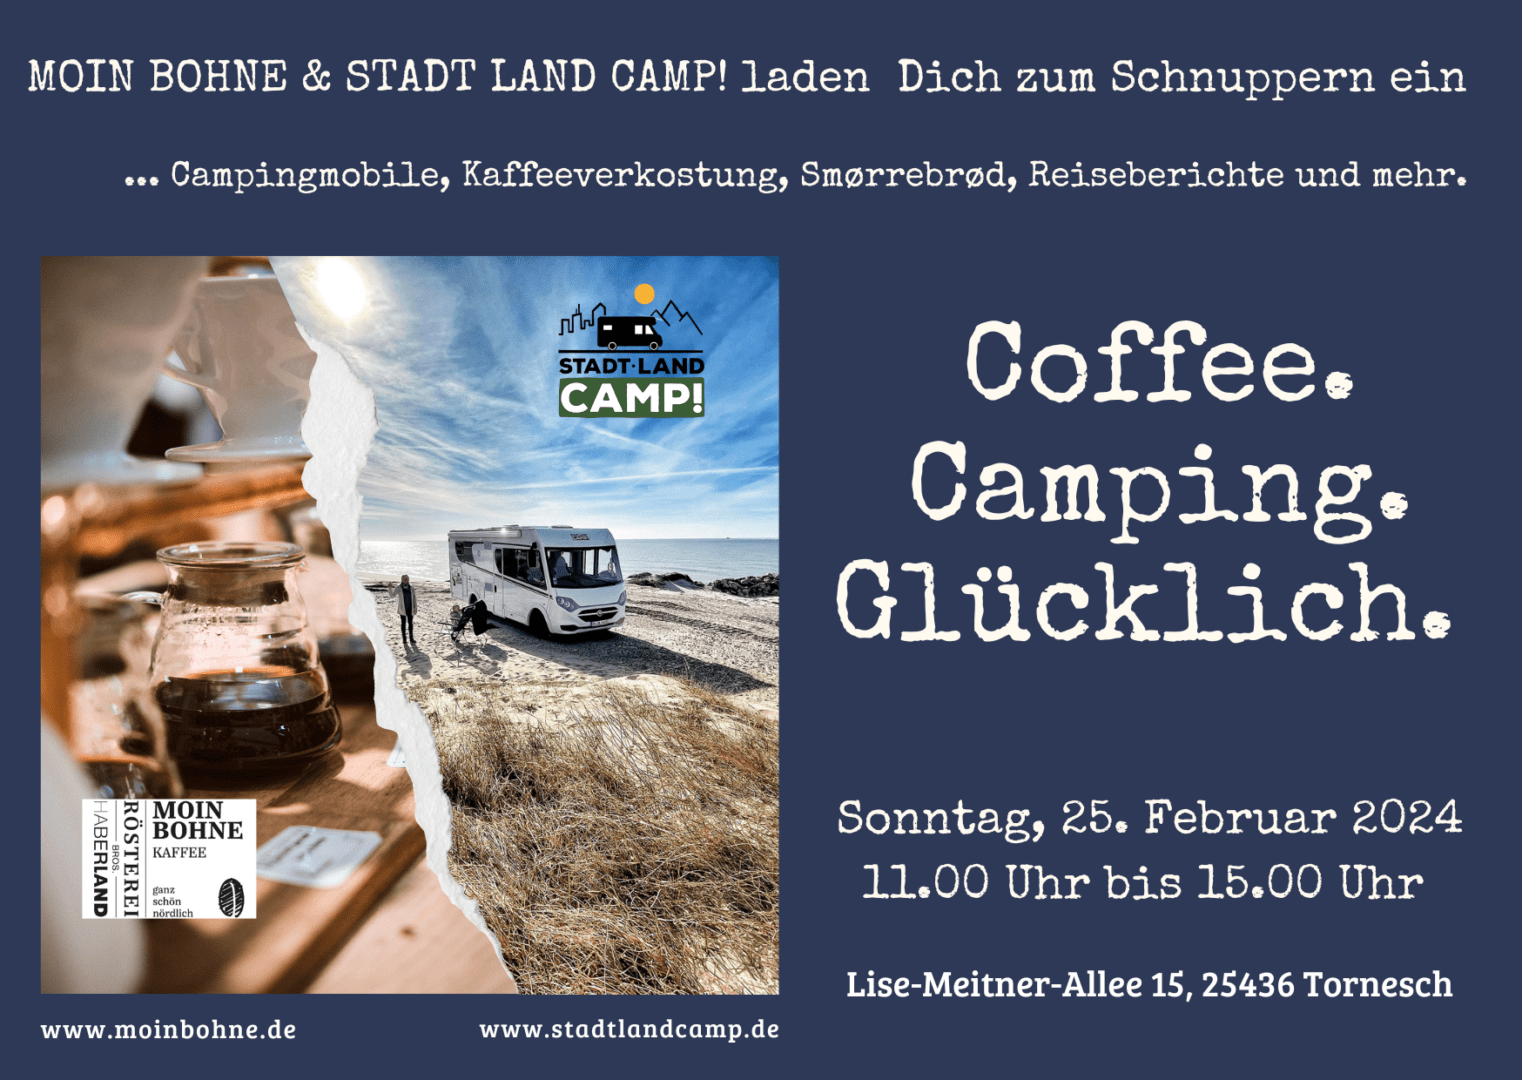 Einladung zum Event "Coffee. Camping. Glücklich."